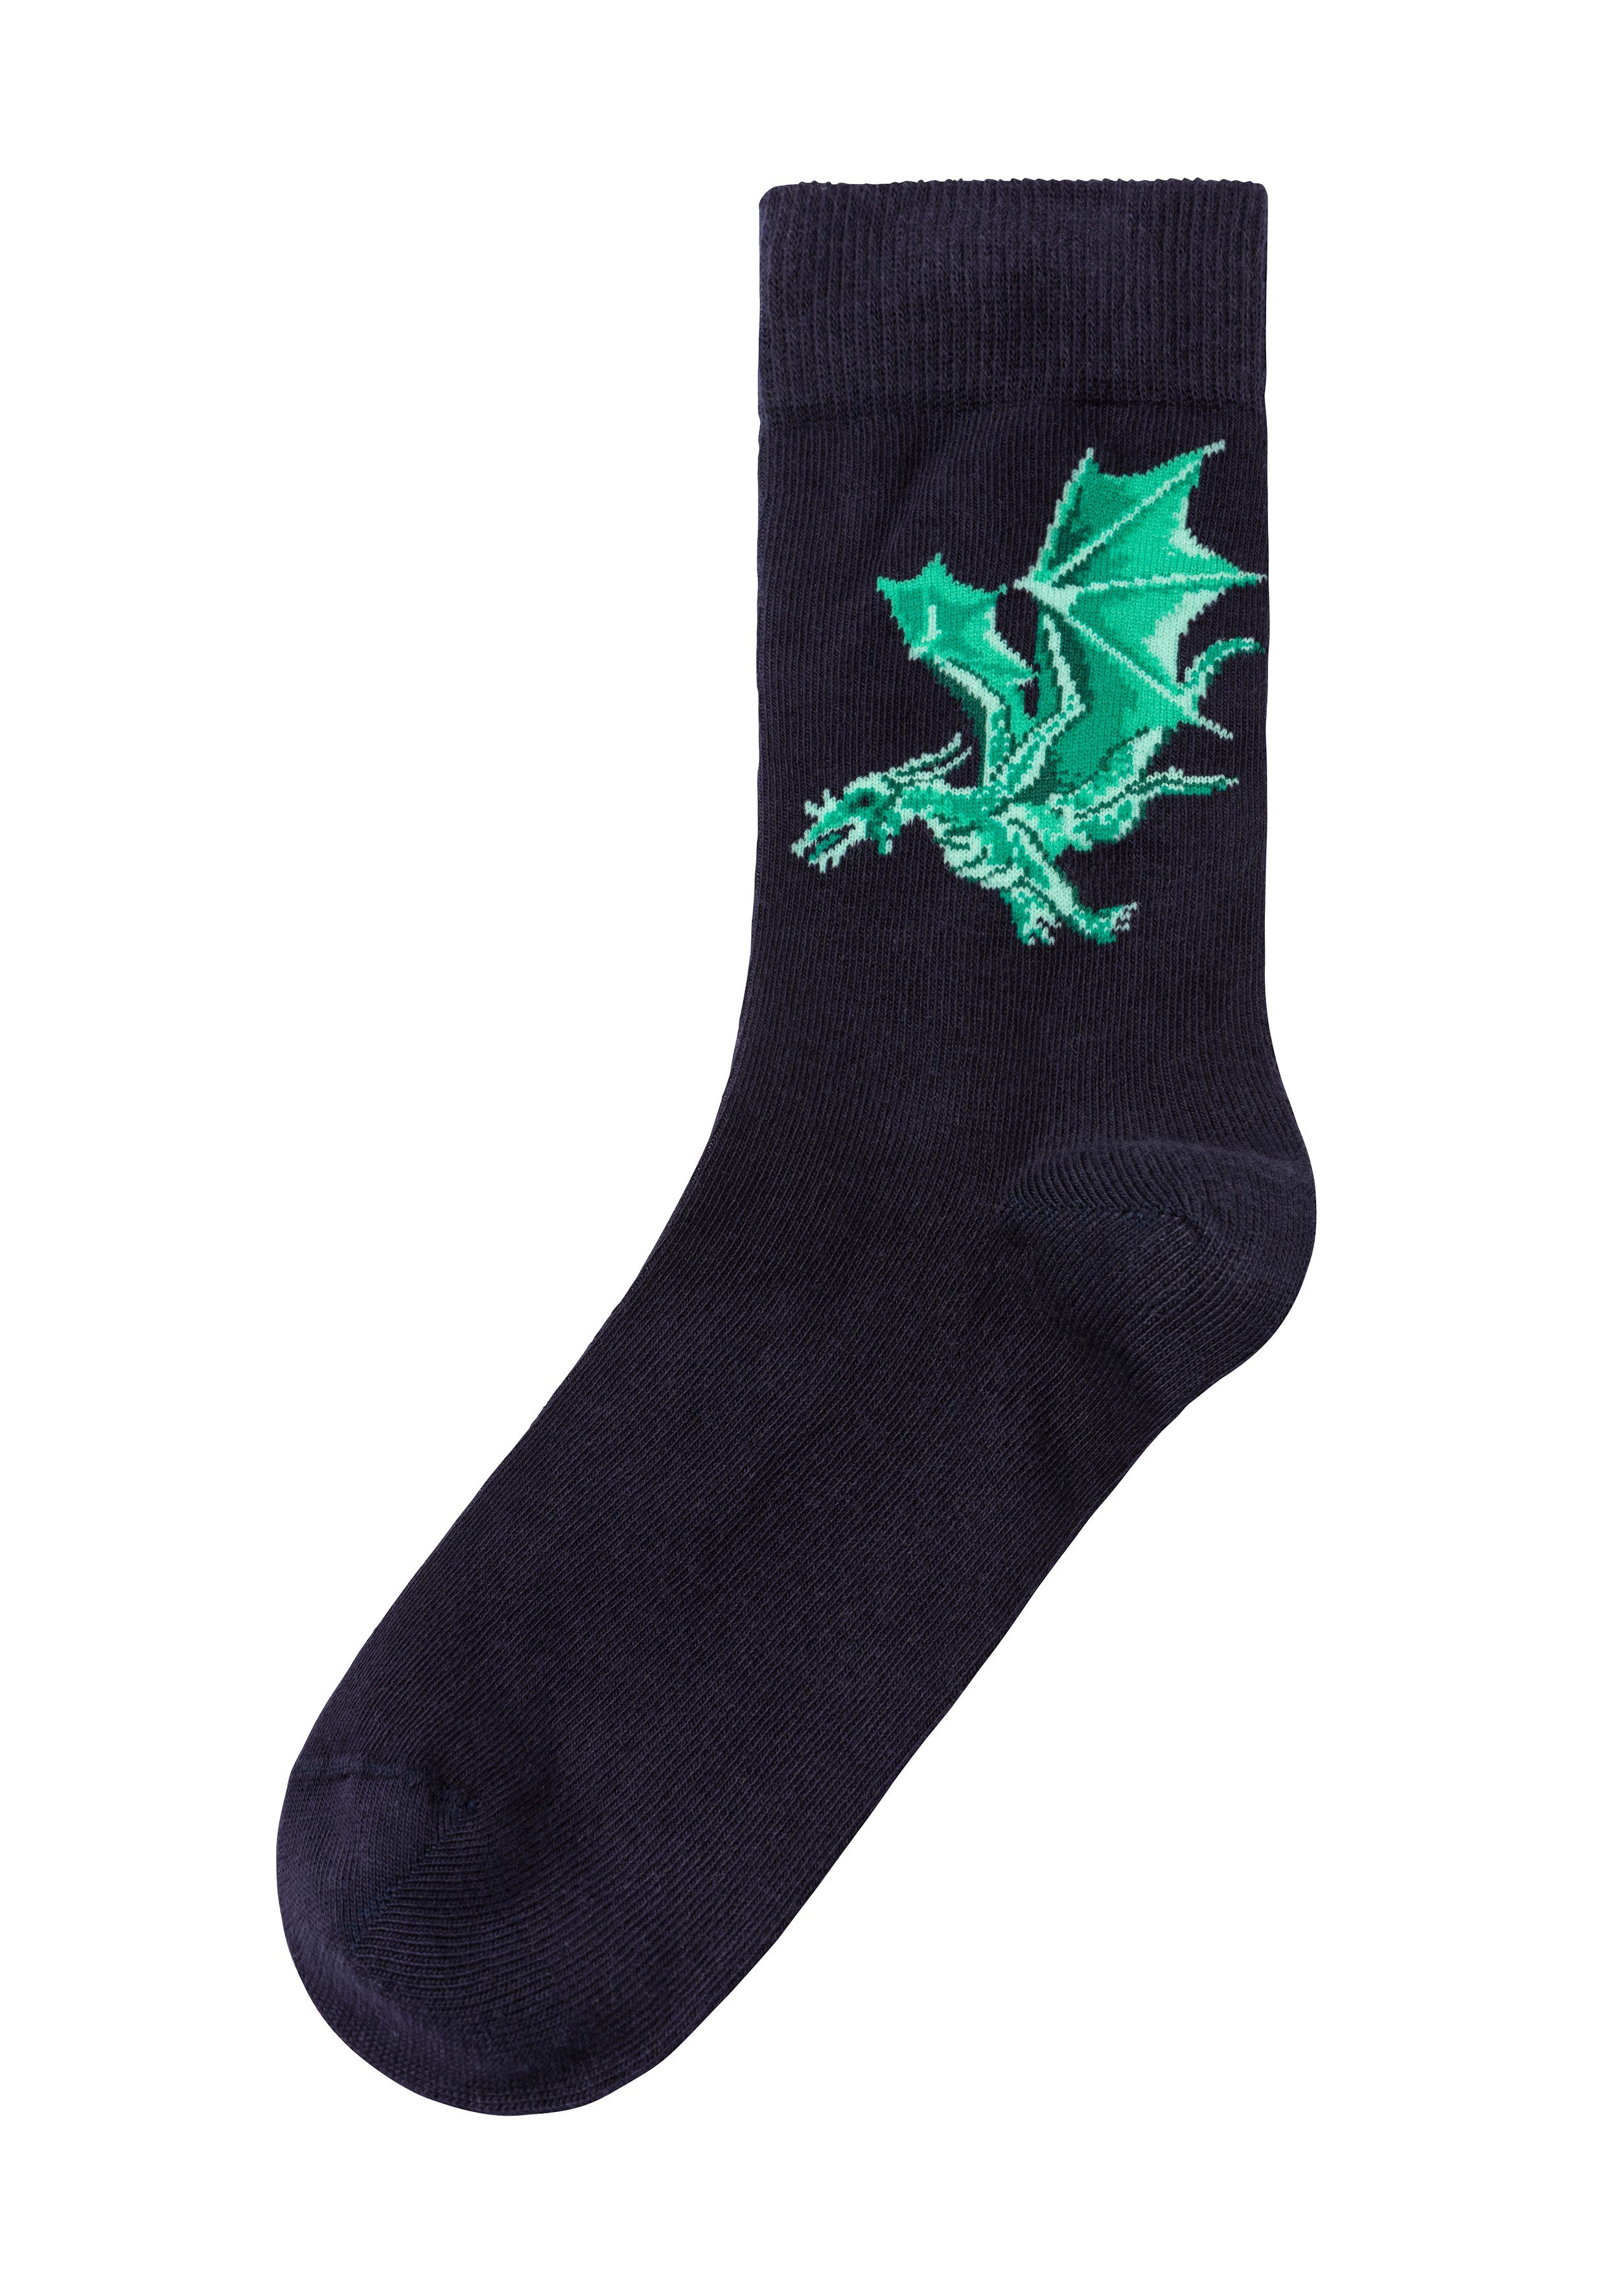 Motiven (5-Paar) mit Drachen Socken unterschiedlichen H.I.S